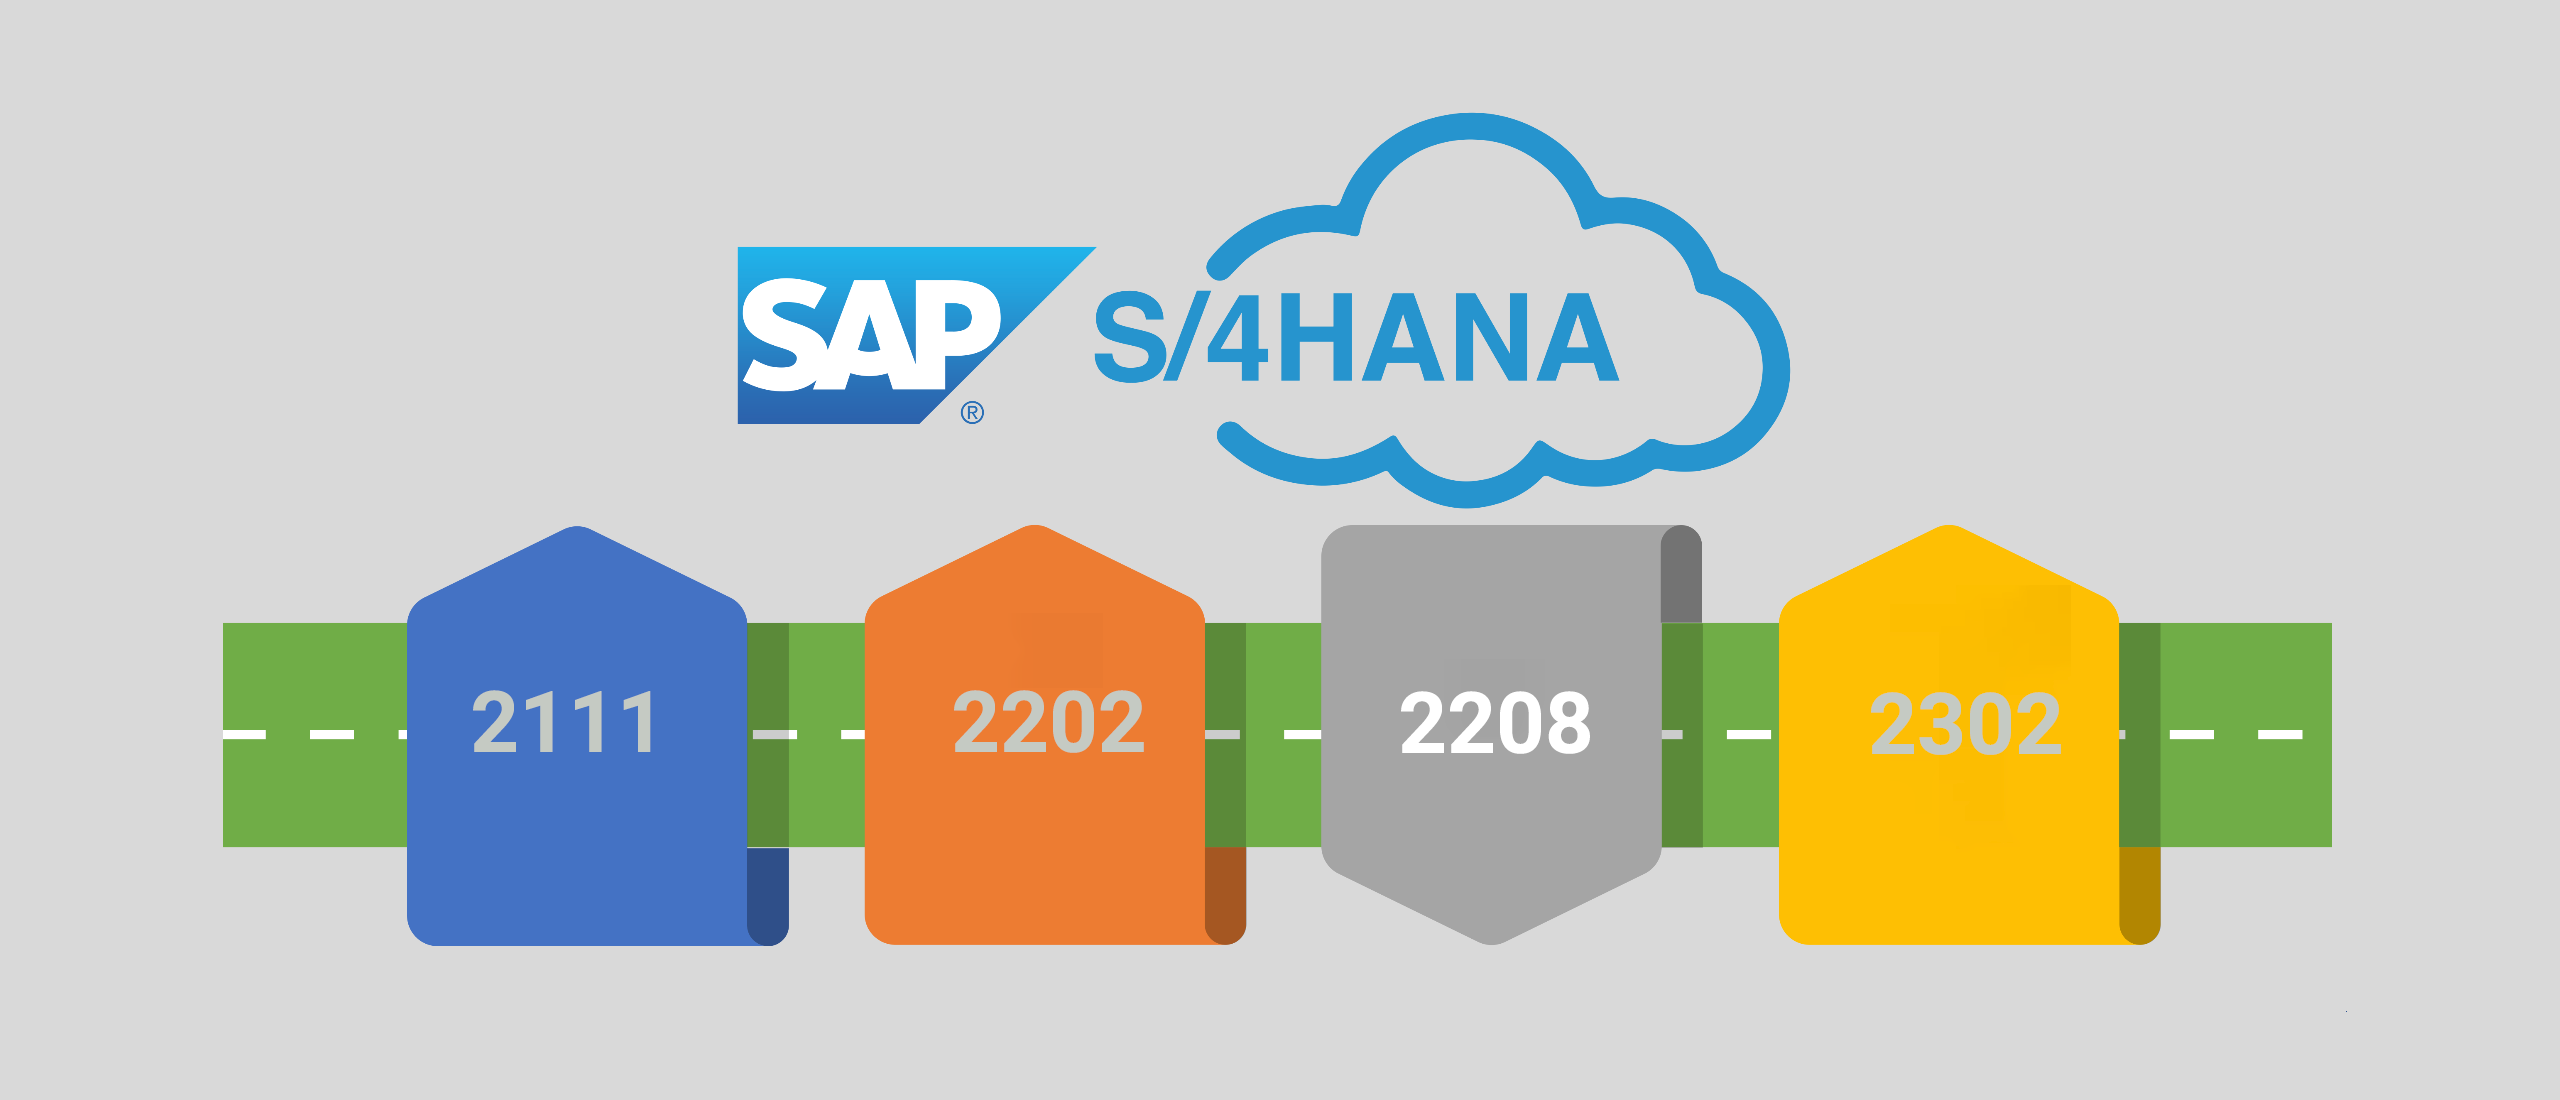 SAP S/4HANA Public Cloud Release 2208 Update